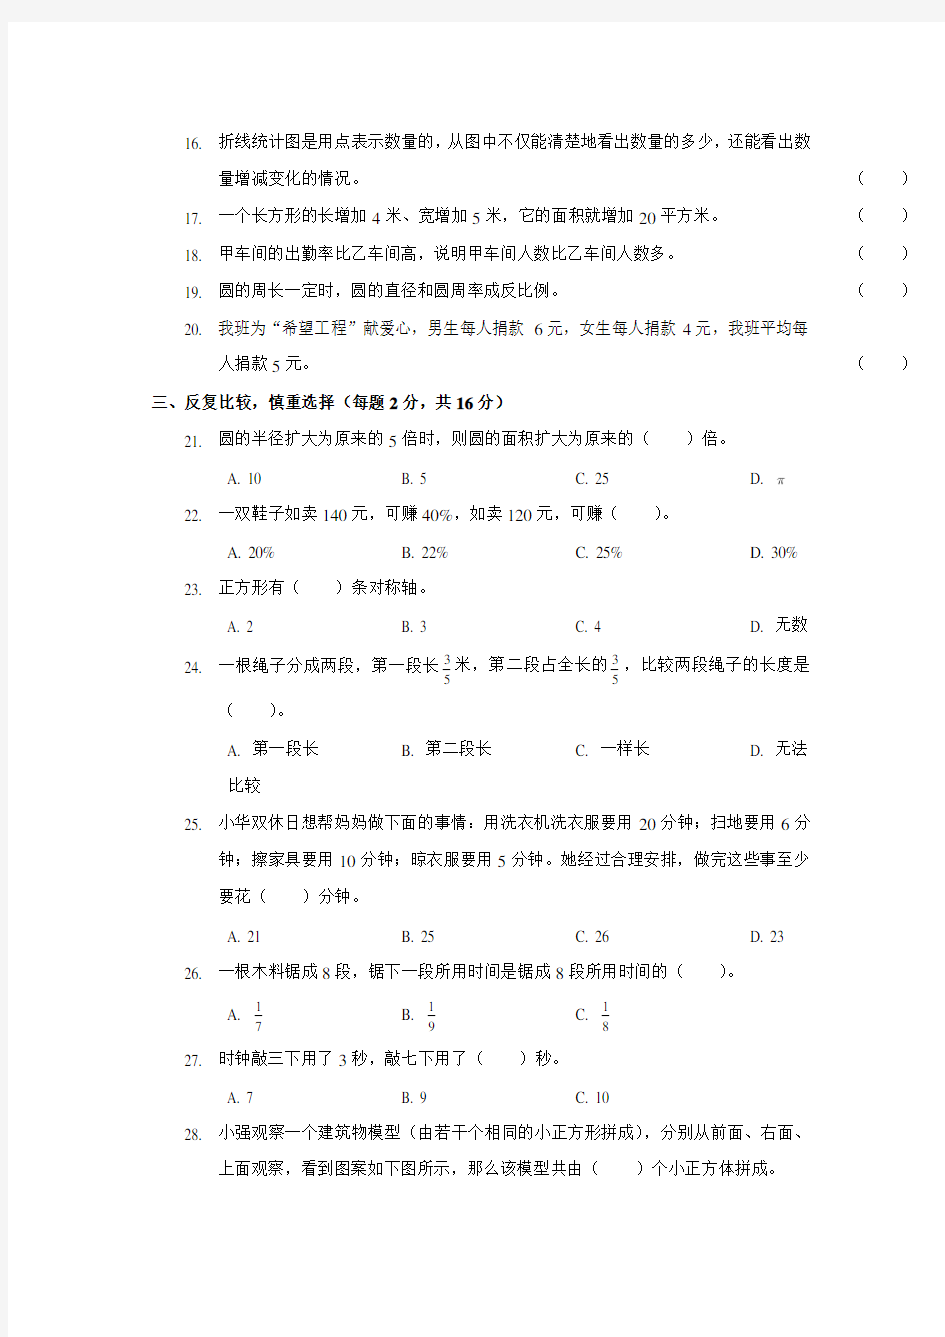 北京市首都师范大学附属中学初一新生分班(摸底)数学模拟考试(含答案)